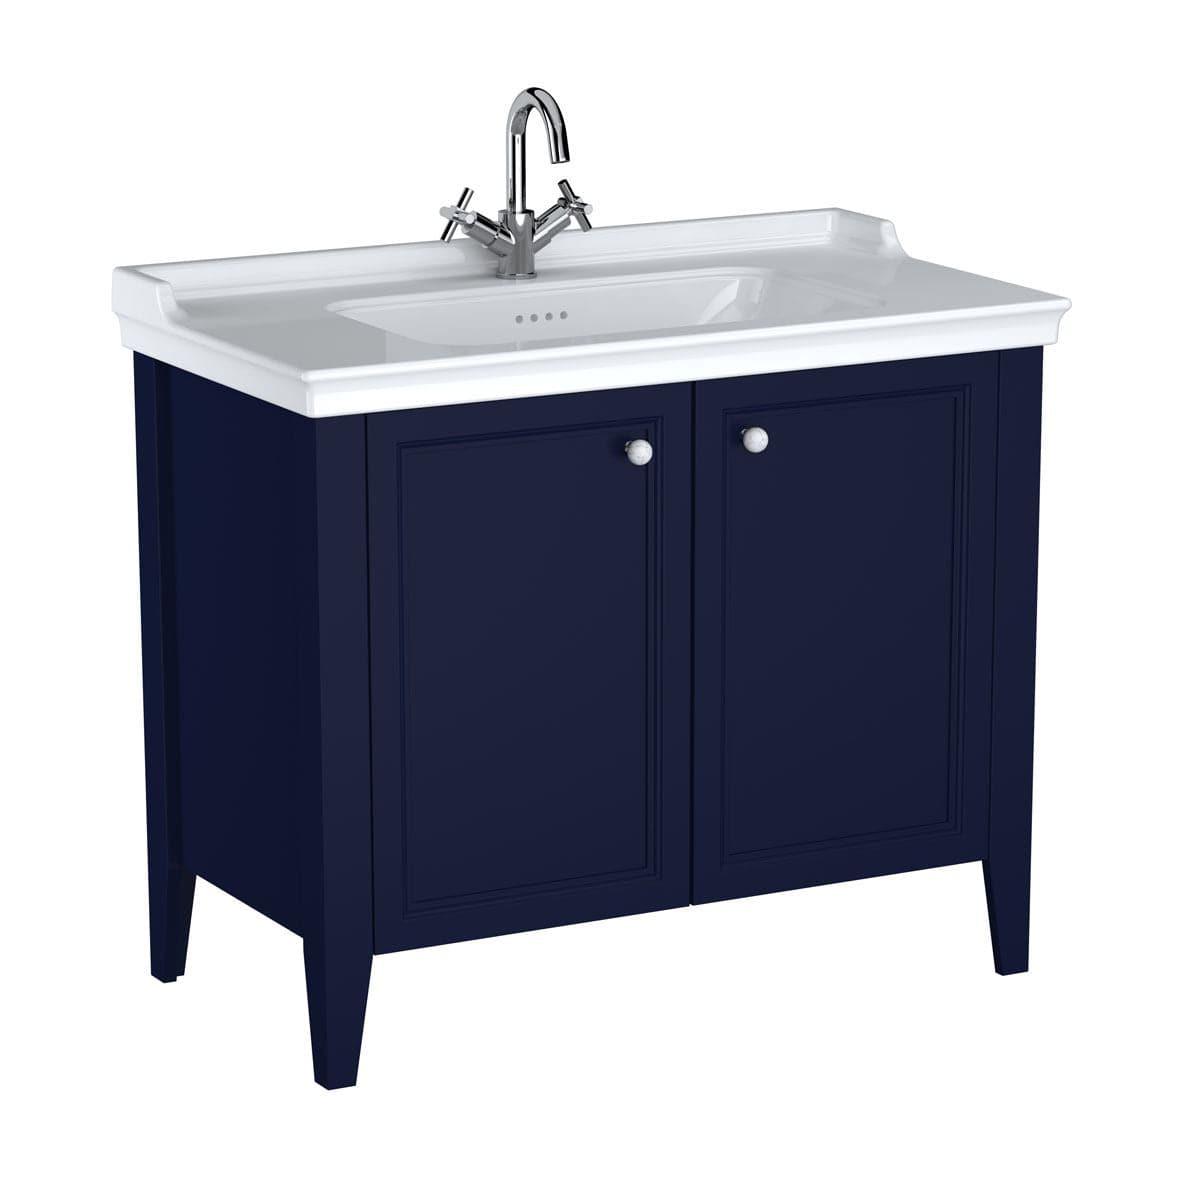 VitrA Valarte Set 100 cm Möbelwaschtisch + Waschtischunterschrank 2 Türen Stahlblau (Lack)